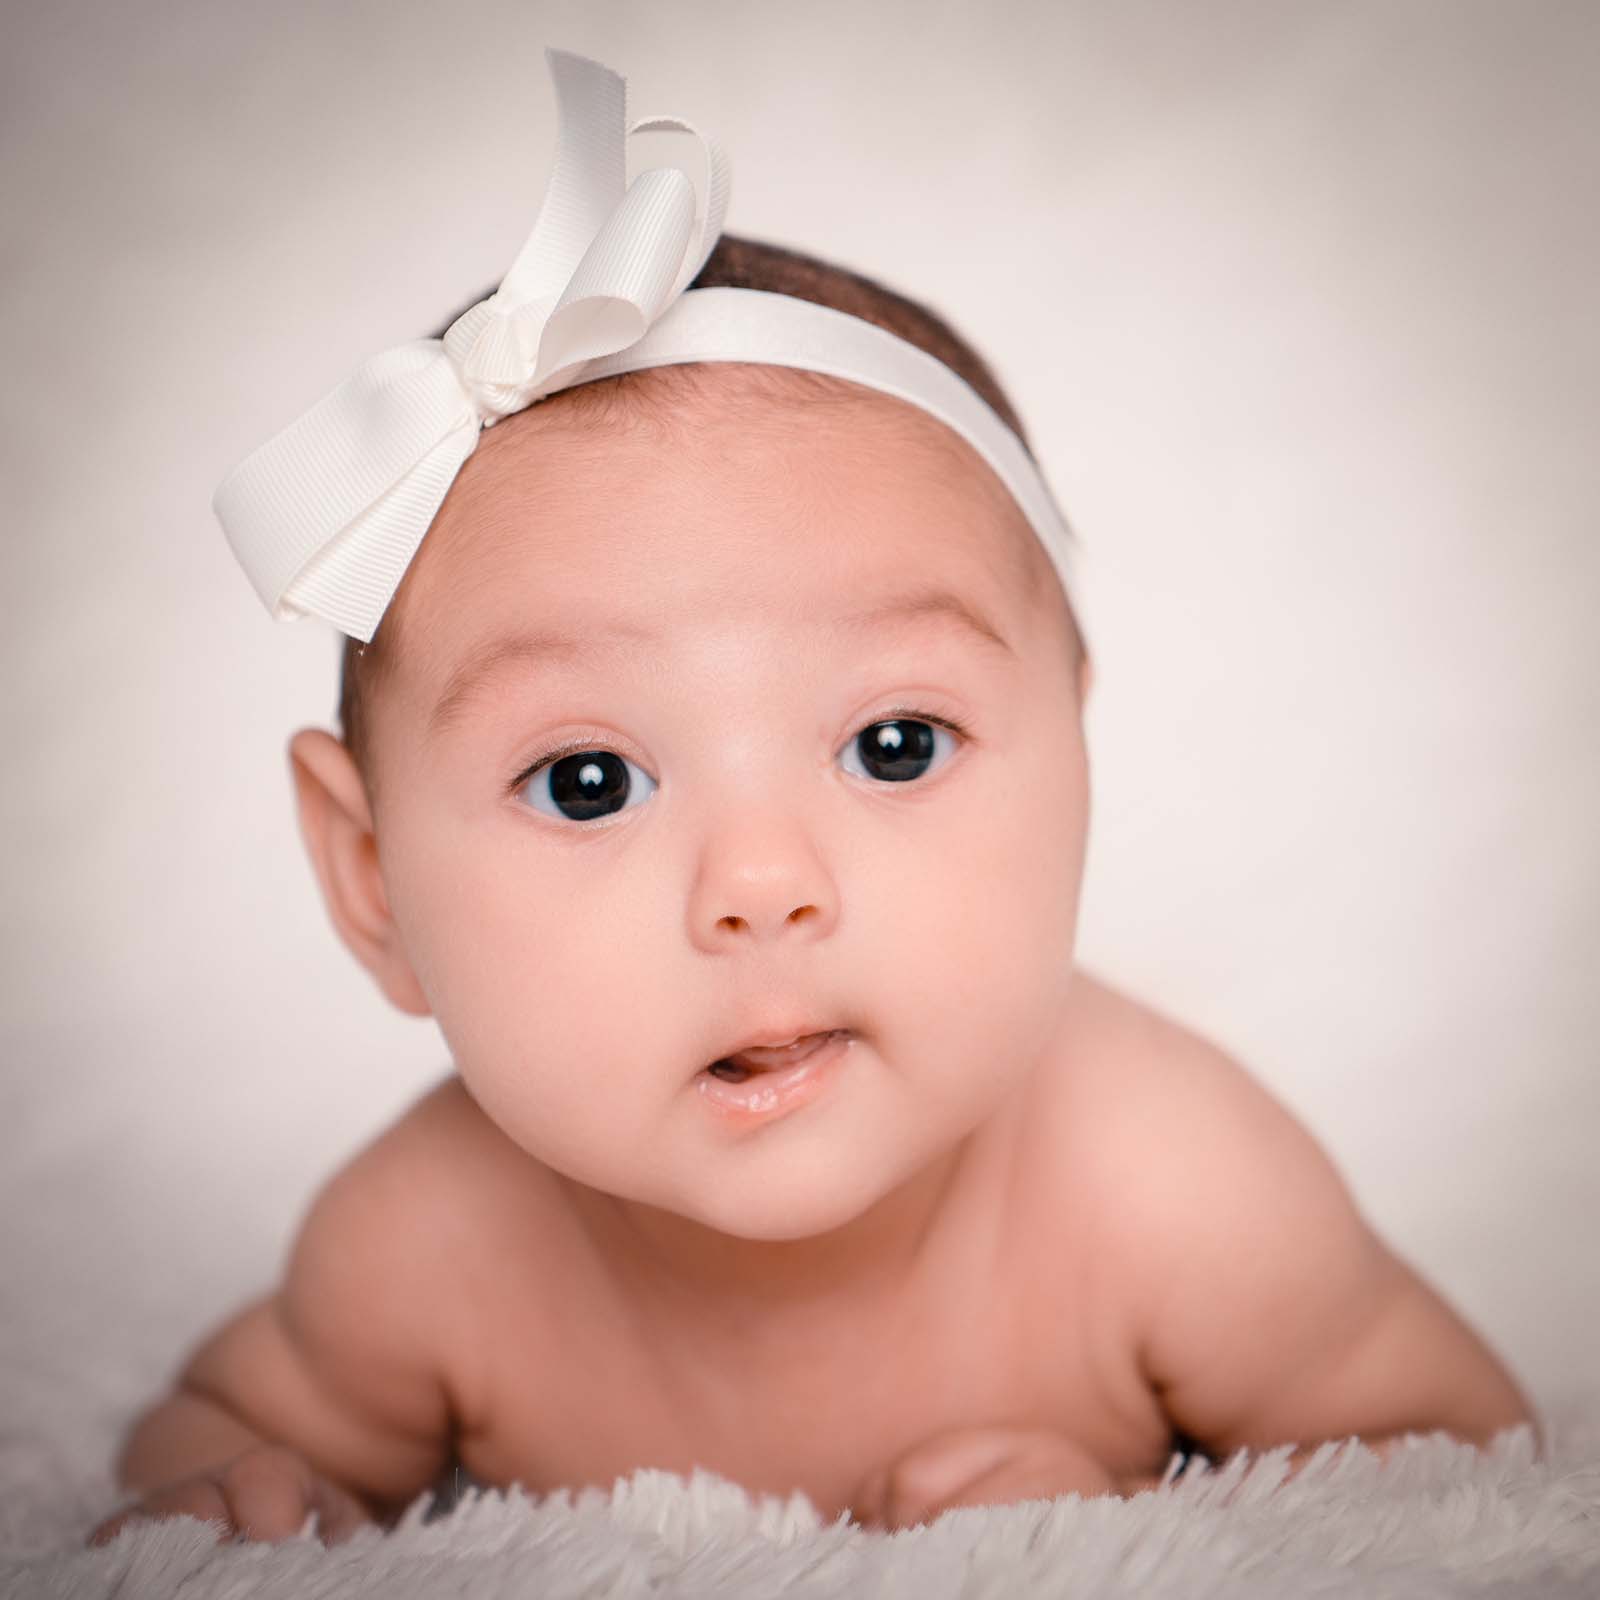 portrait de bébé se tenant allongé la tête relevée avec un petit nœud blanc dans les cheveux